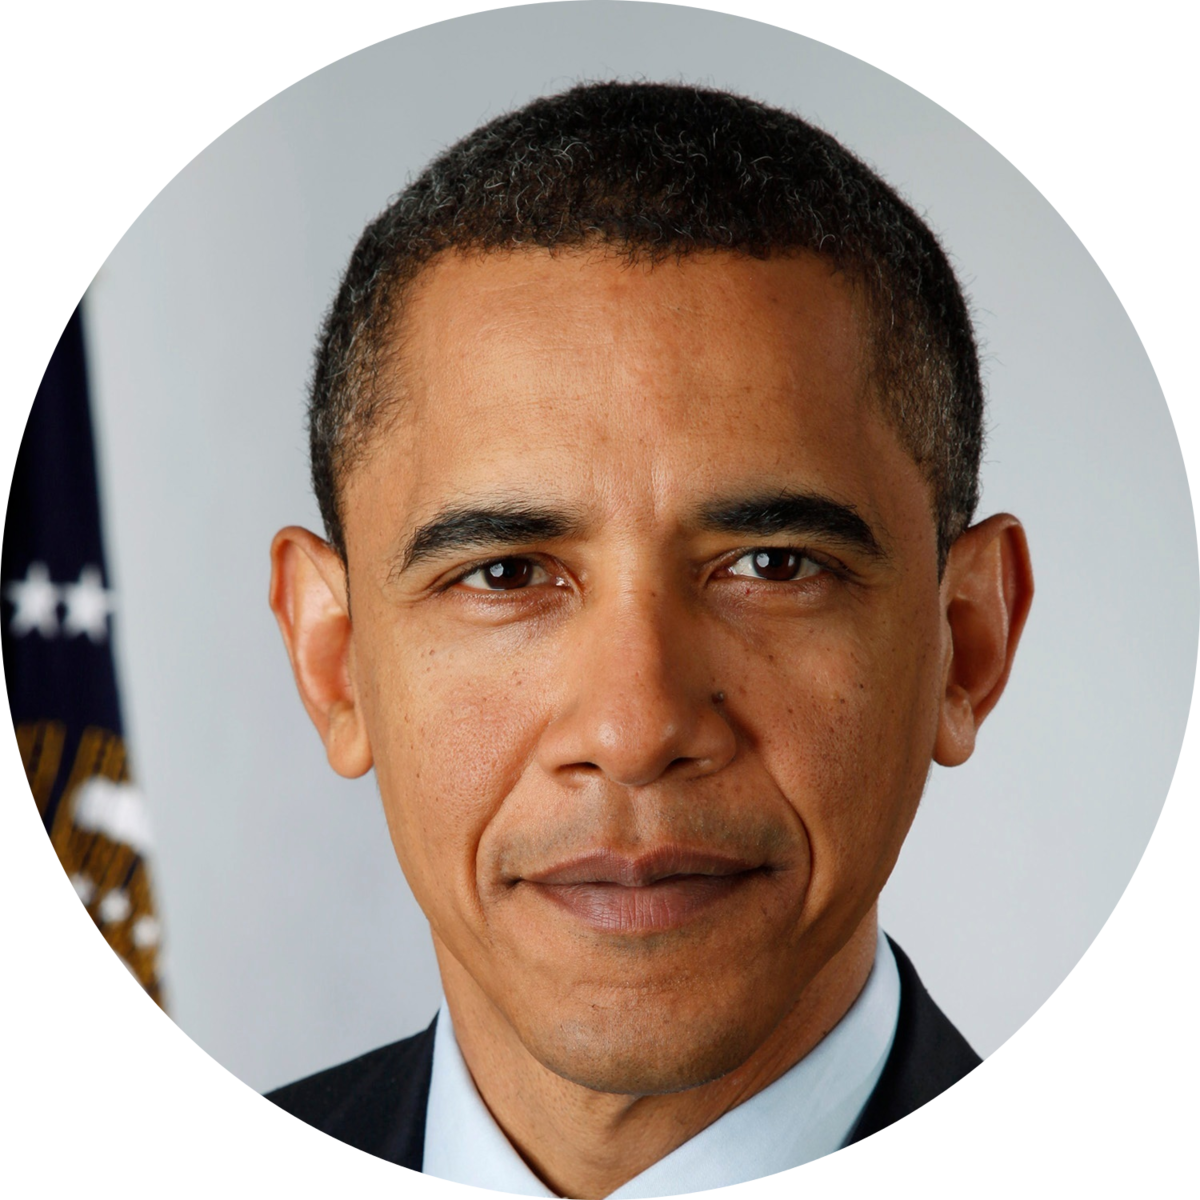 Barack Obama Portrait PNG